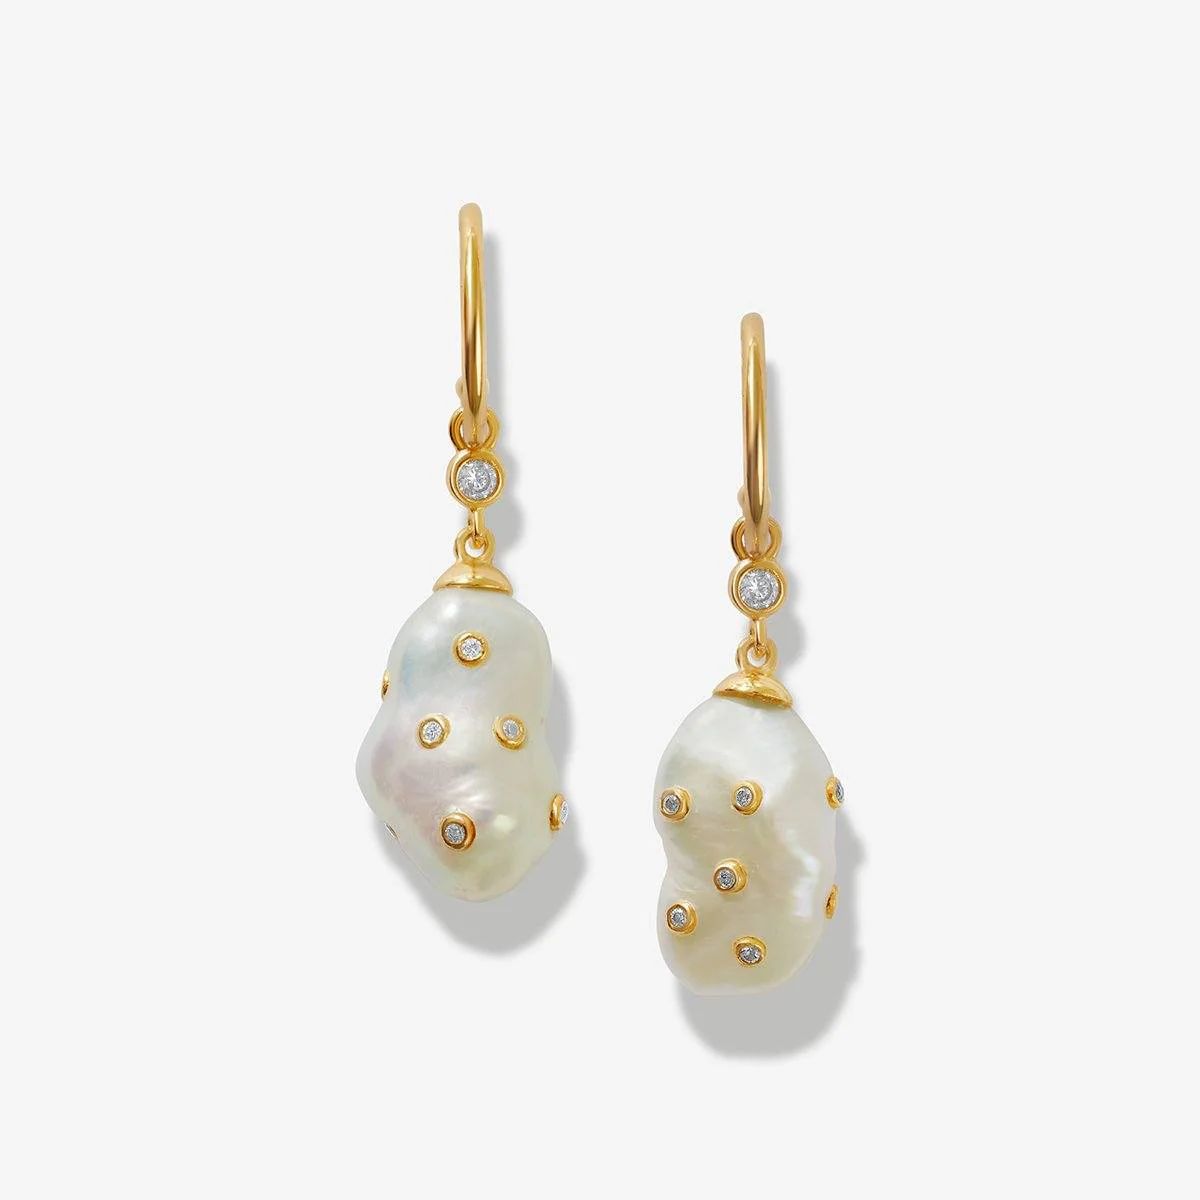 Hentley pearl earrings | Adornmonde